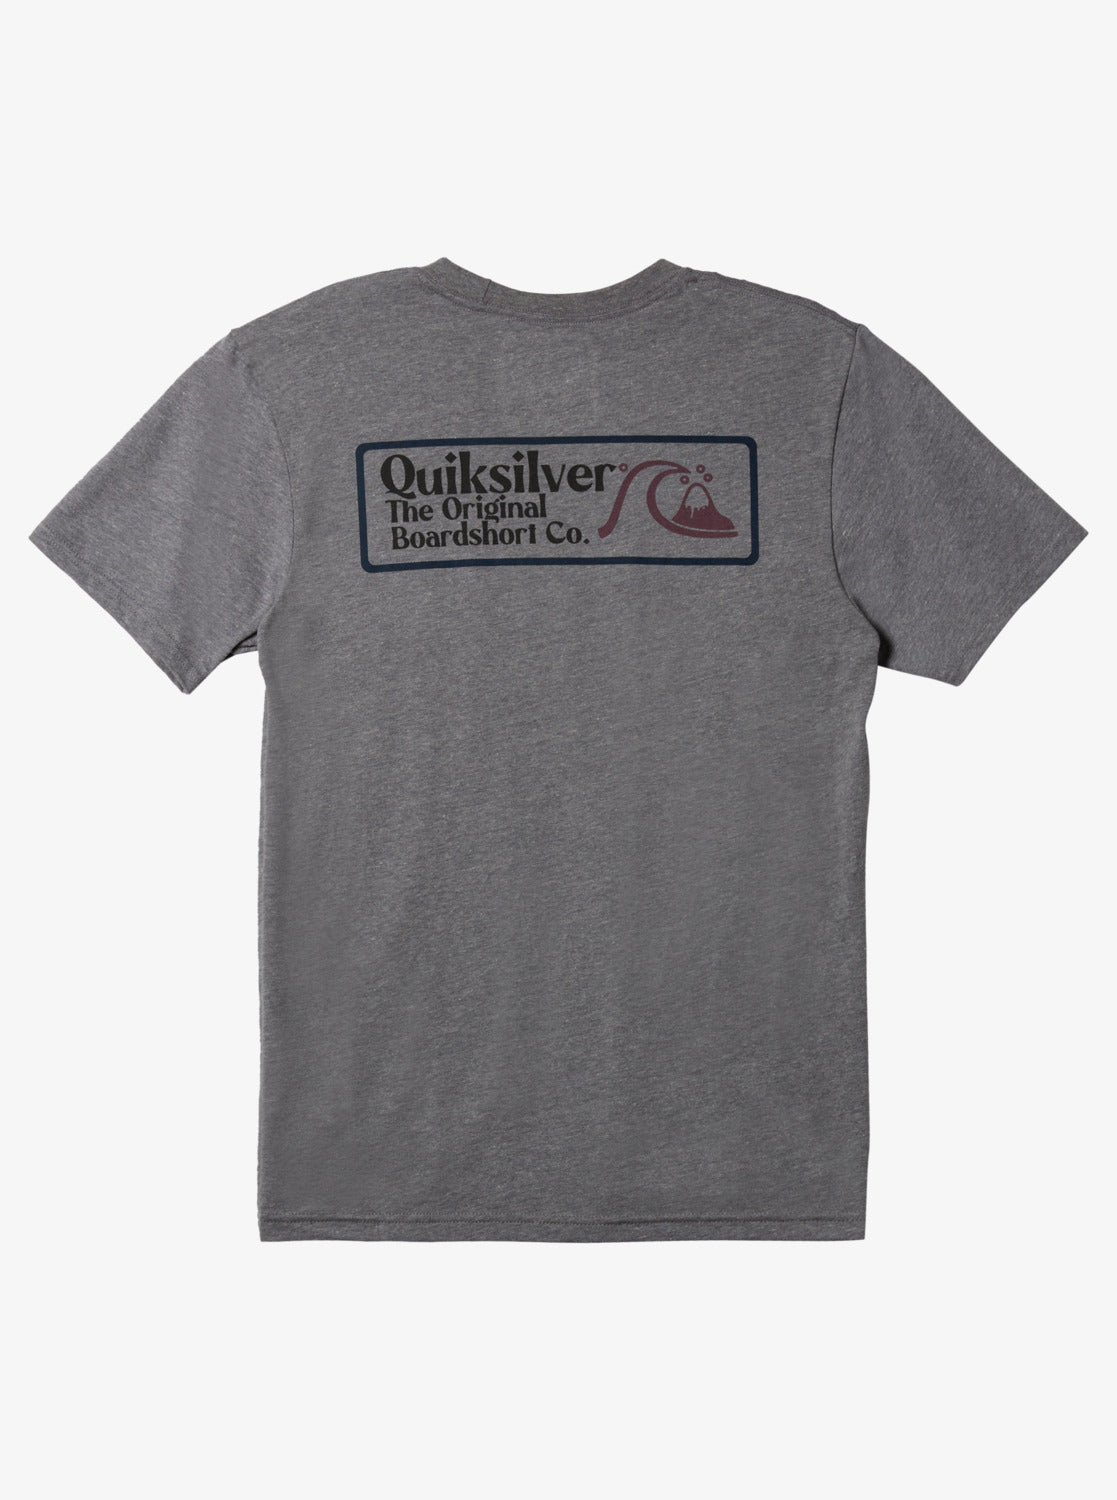 Quiksilver Square Bizz Tee Shirt - 88 Gear